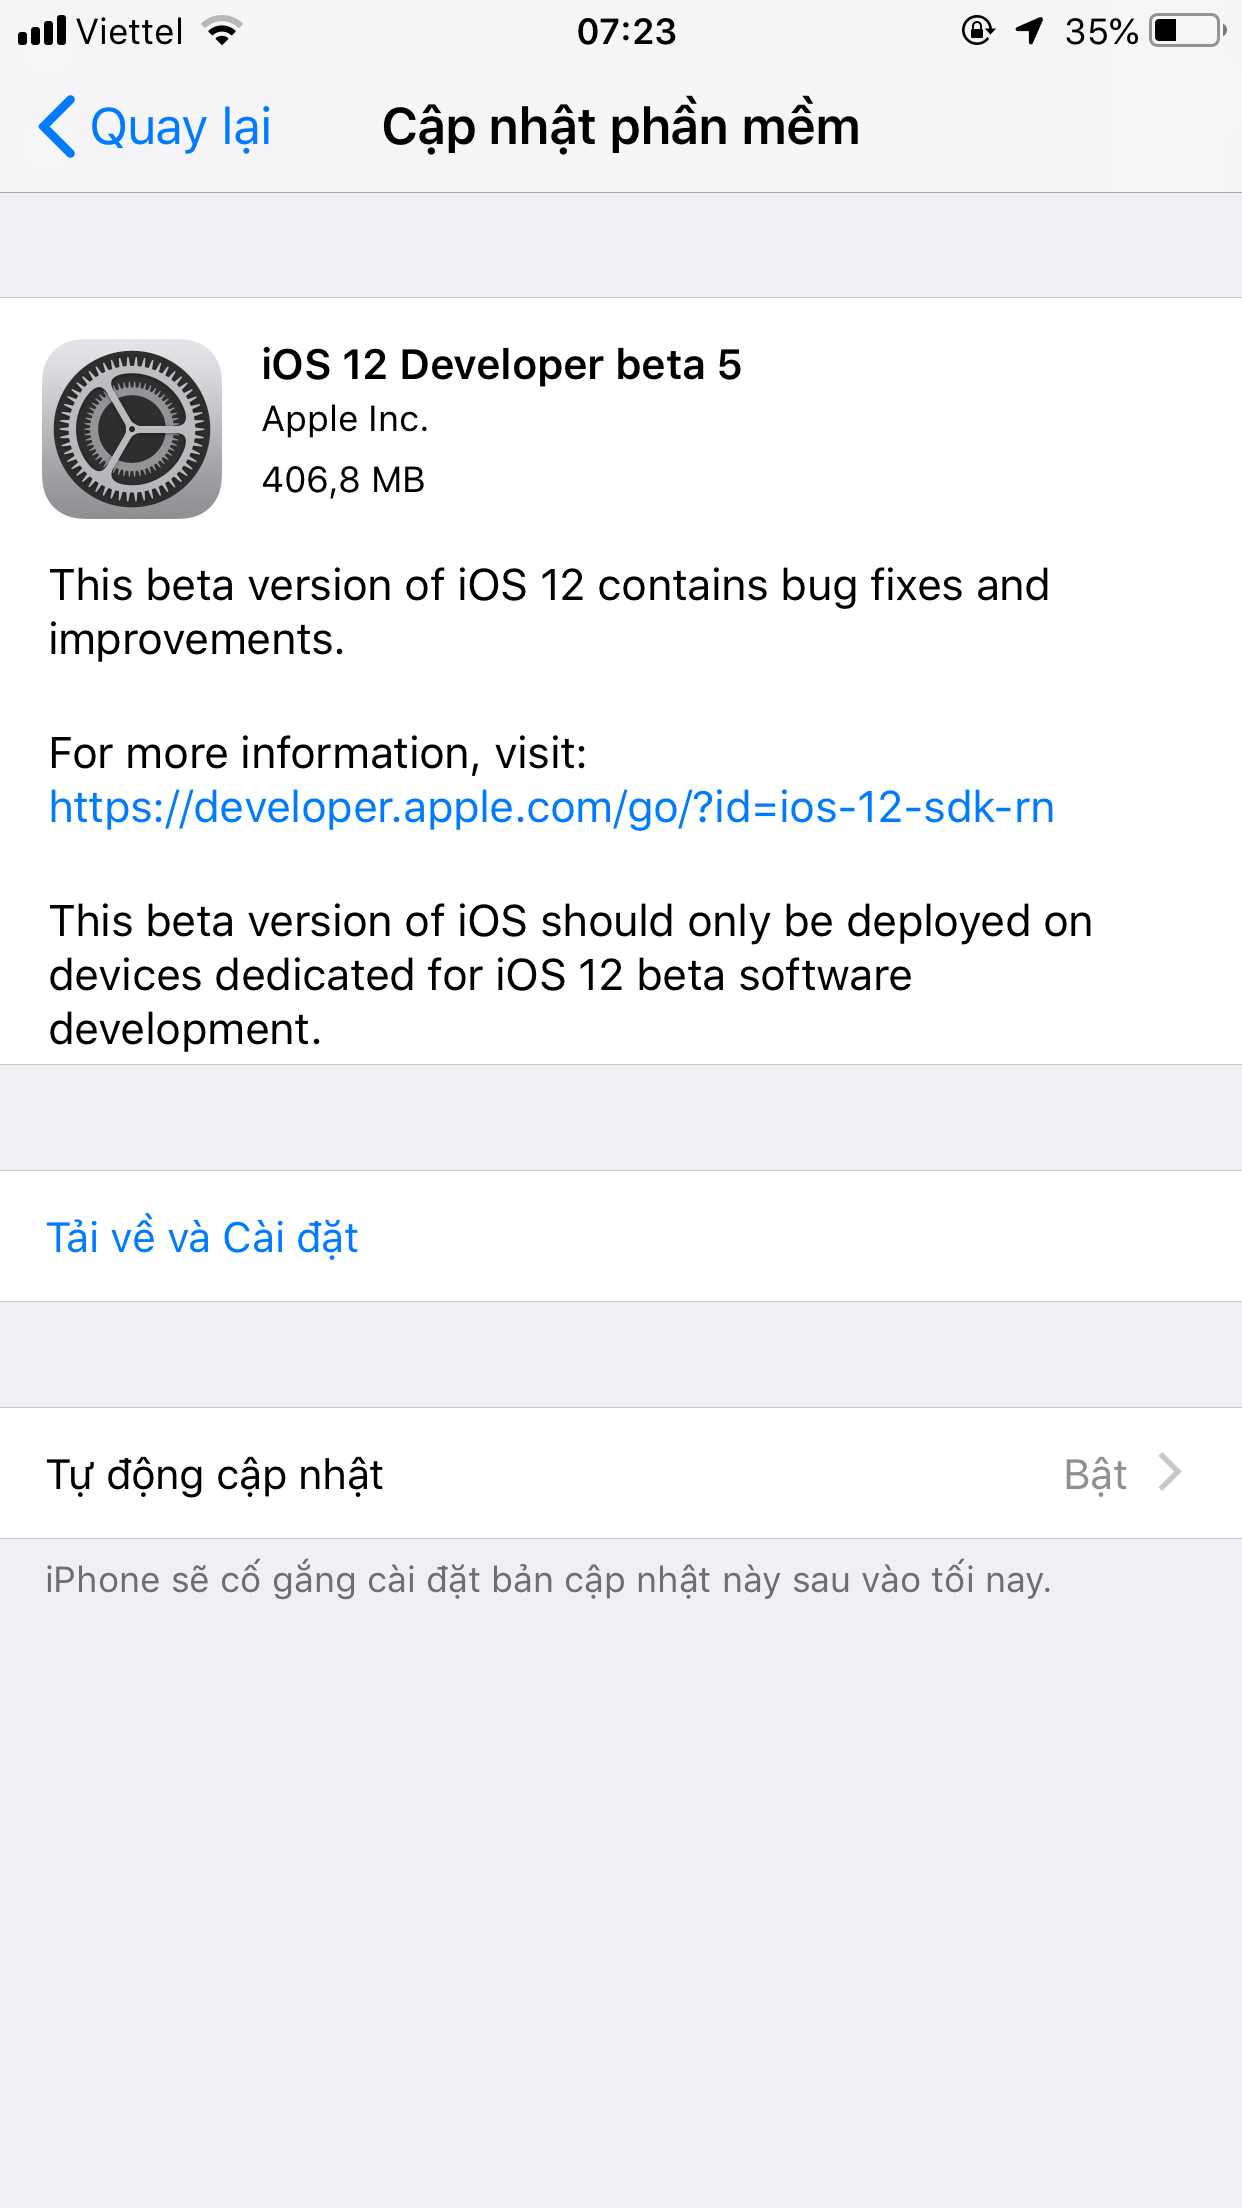 tính năng mới ios 12, safari trên ios 12, cập nhật ios mới nhất, tin tức apple, tin công nghệ, tin iphone, trang thông tin ftios, cydia ios 12, jailbreak ios 12, cydia, apple, iphone, iphonex, tính năng mới trên safari, wwdc 2018 có gì mới, iphone 2018, tính năng yêu thích trên iOS 12, hiệu suất iphone 5s trên ios 12, có nên lên ios 12 không, iphone cũ nên lên ios 12 không, iOS 11.4.1 beta, ios 11 4, ios 12, tin tức apple, ios beta mới nhất, cách cài đặt ios beta, cài đặt iphone, cấu hình beta, hướng dẫn cài đặt ios beta mới nhất, apple, iphone, ios, tin công nghệ, thông tin ios mới, báo công nghệ apple, ios 12 beta, ios 12 beta 5 cách cài đặt, ios 12 beta 5 ra mắt, thay đổi trên ios 12beta5. thông tin apple mới nhất, vá lỗi trên ios 12 beta 5, thanh ảnh mới trên ios 12 thử nghiệm, ios 12 beta cho nhà phát triển dowload firmware, thanh apple music mới ios12